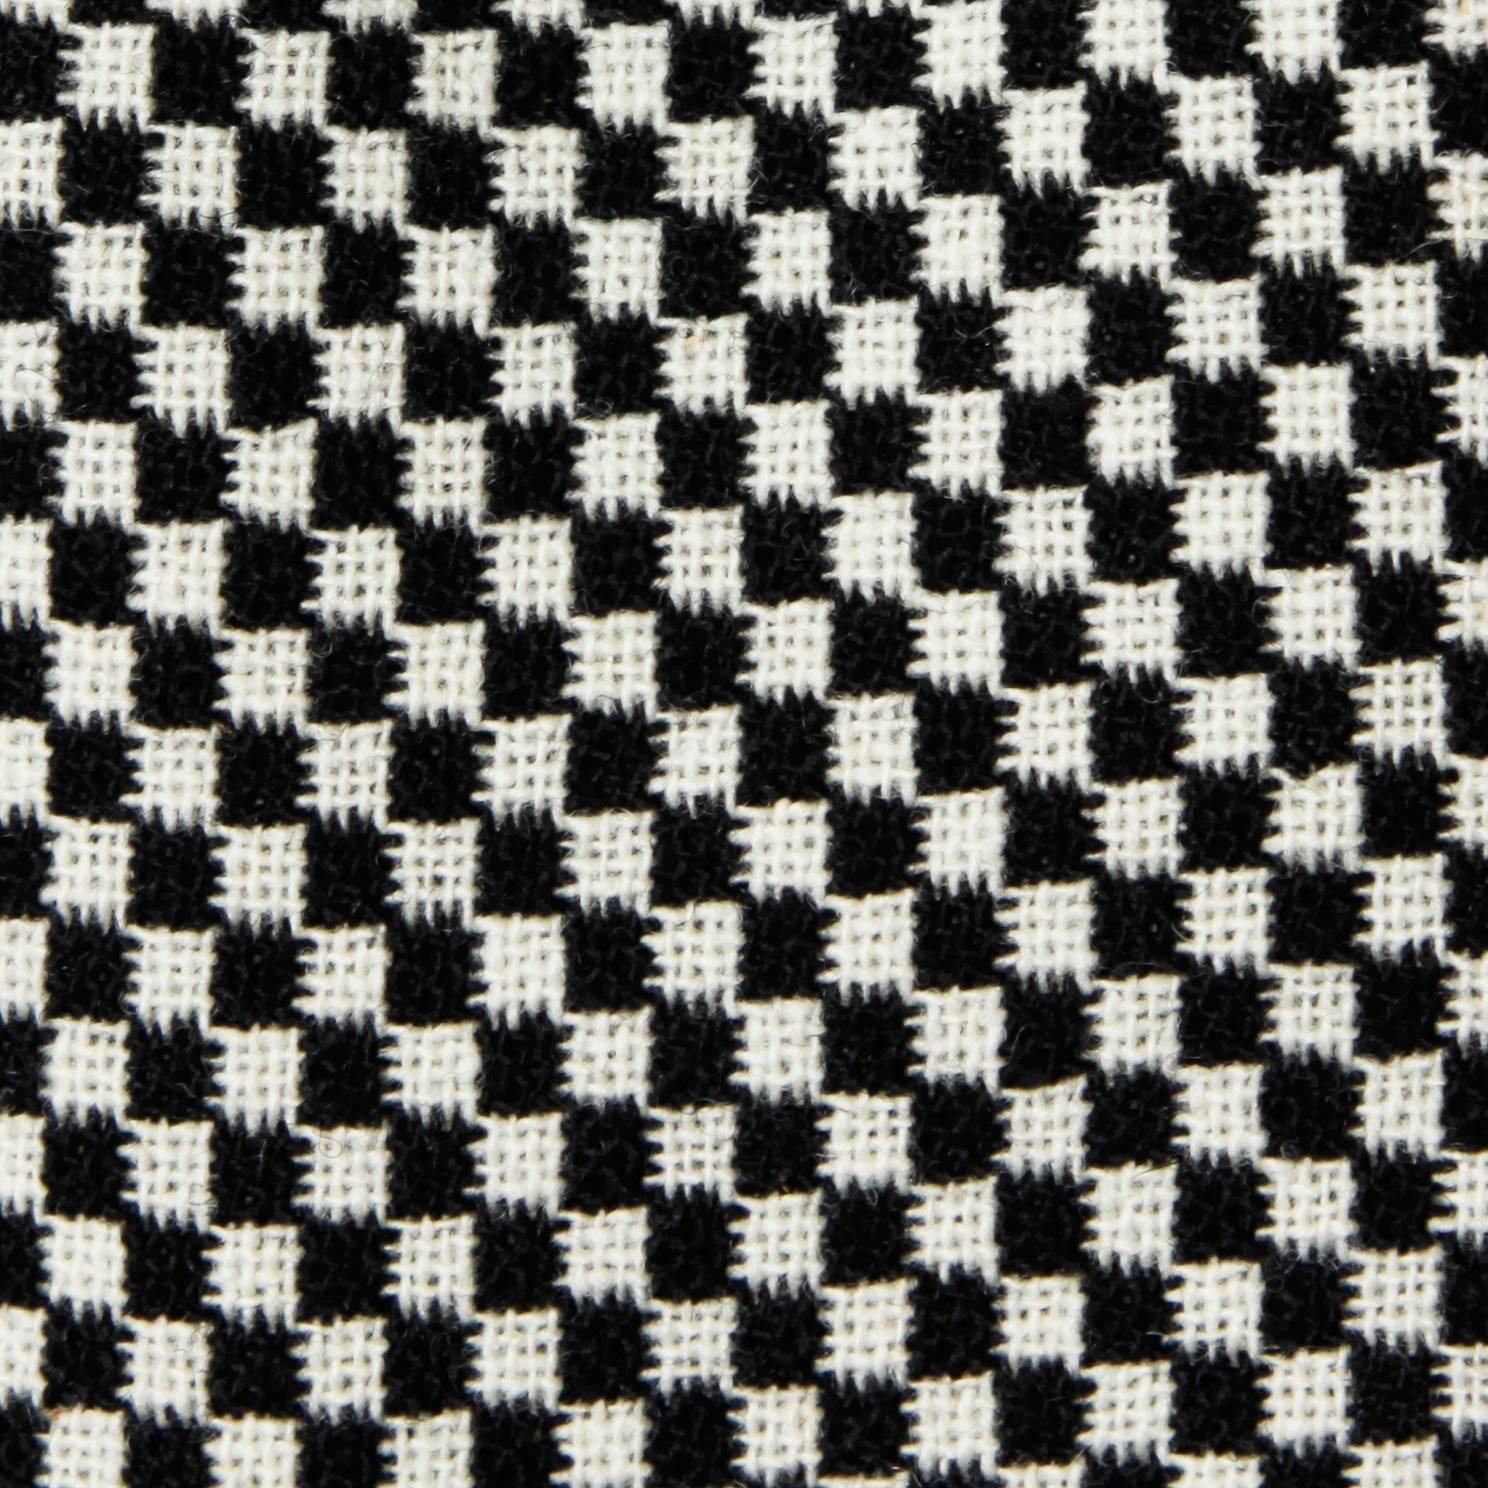 Women's 1960s Donald Brooks Vintage Black + White Checkered Skirt